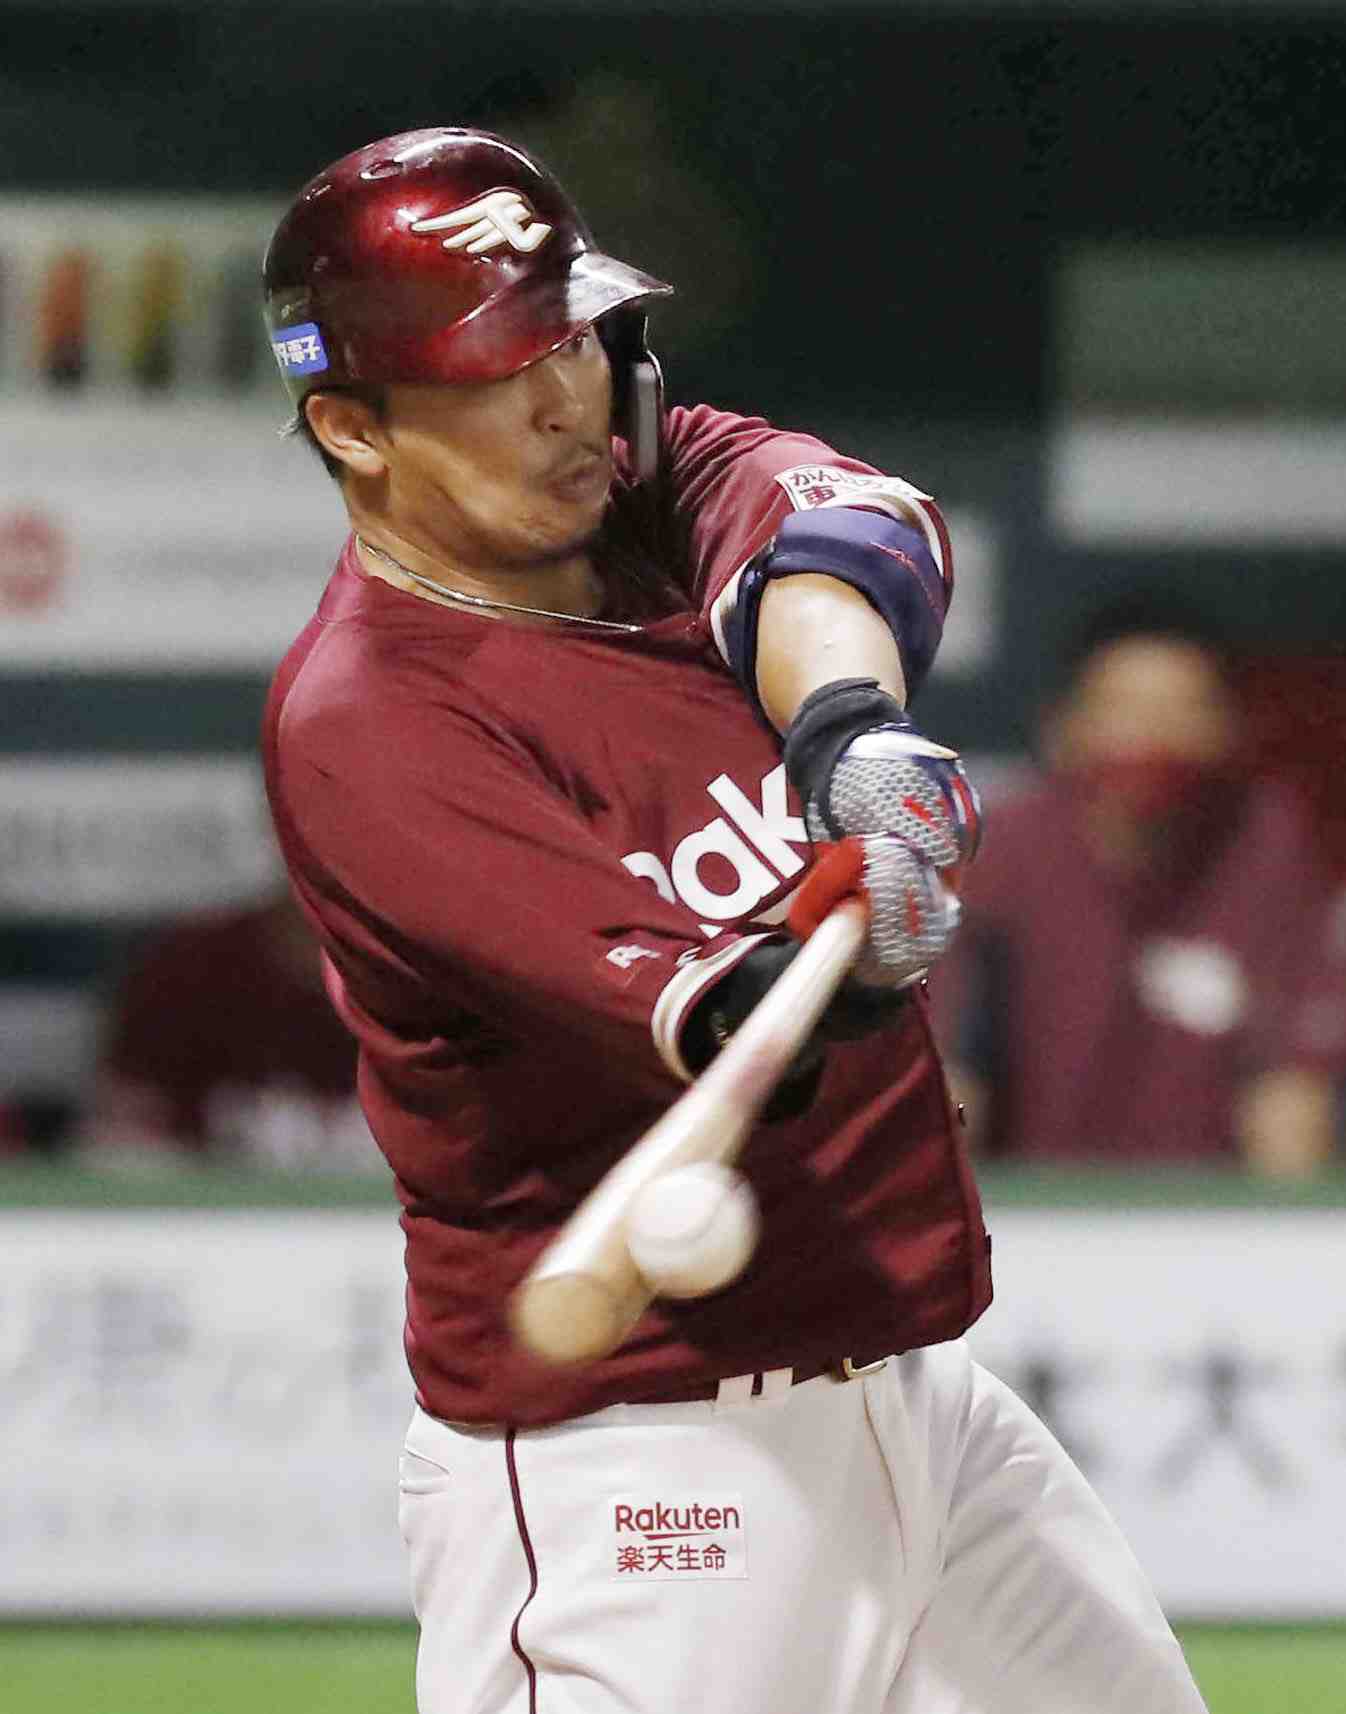 Baseball Npb Rakuten Hideto Asamura 004 Japan Forward